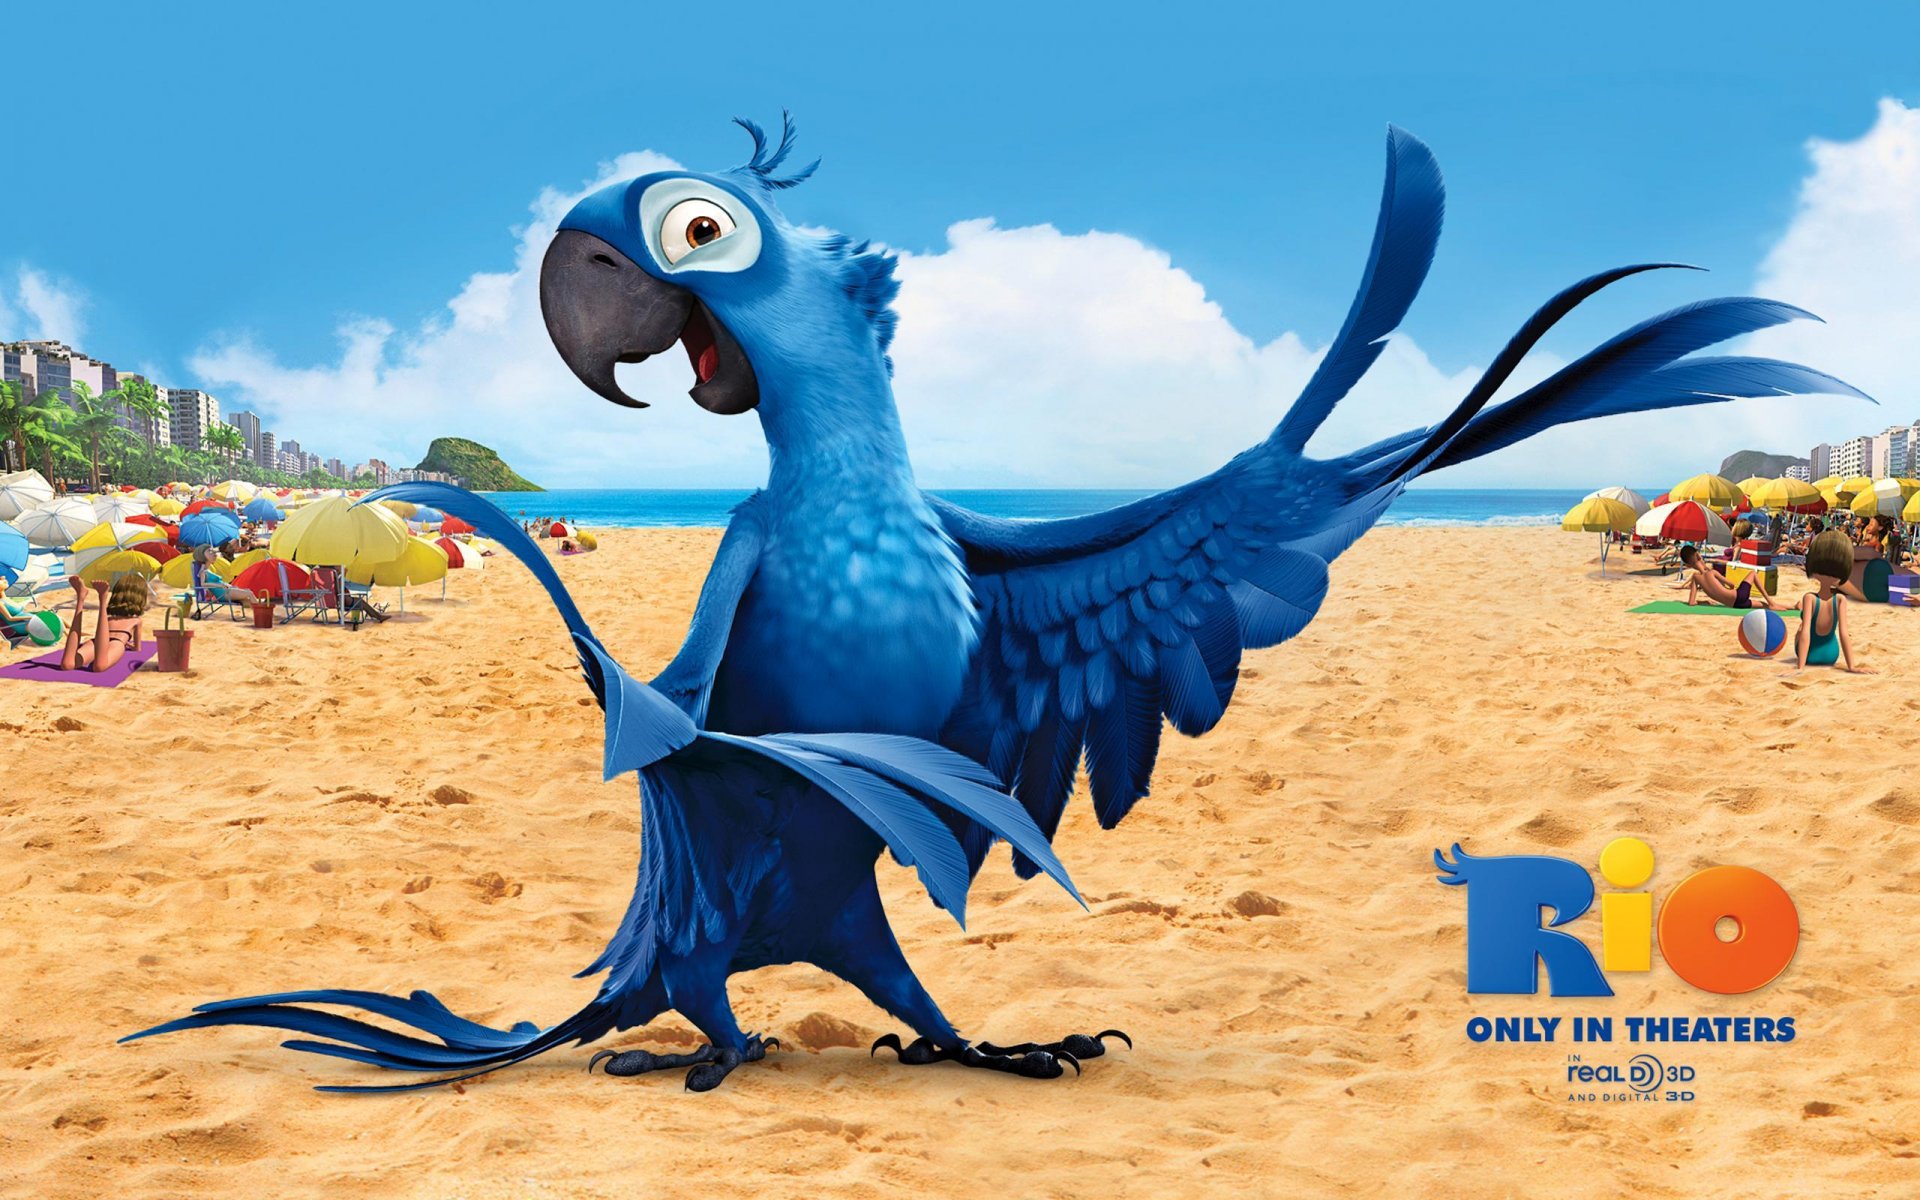 мультфильм рио рио-де-жанейро птица попугай голубой ара голубчик перья крылья клюв пляж песок ярко красочно